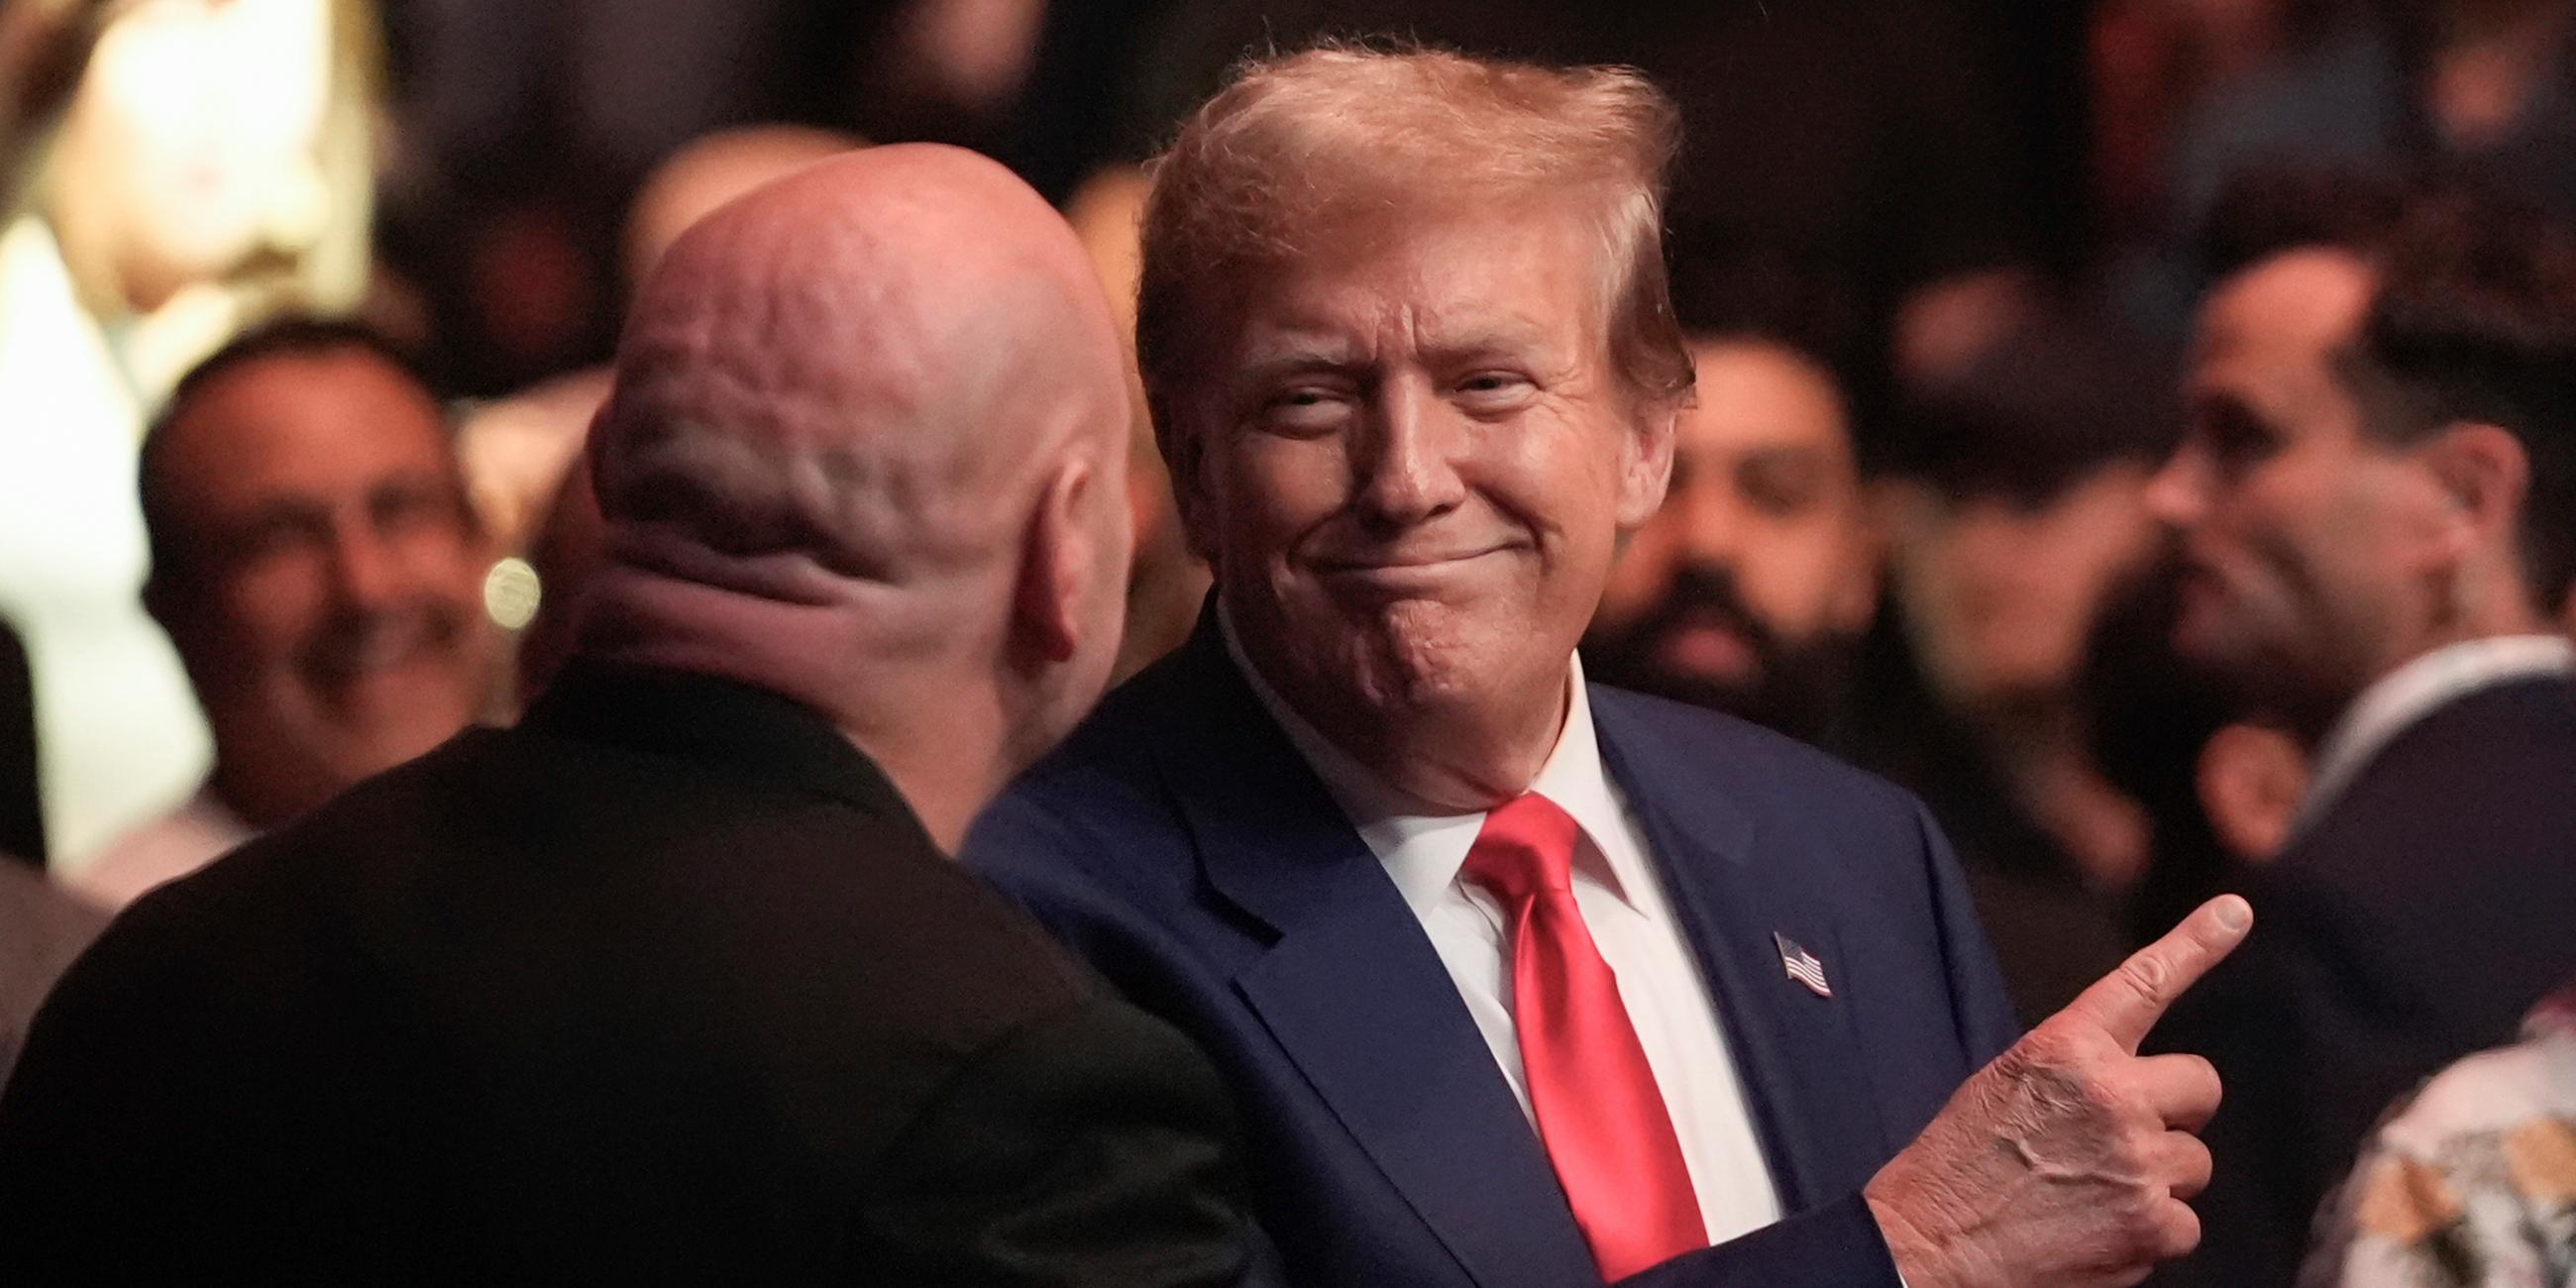 Donald Trump steht im blauen Anzug mit roter Krawatte in einer Menge und zeigt mit dem Zeigefinger nach oben.